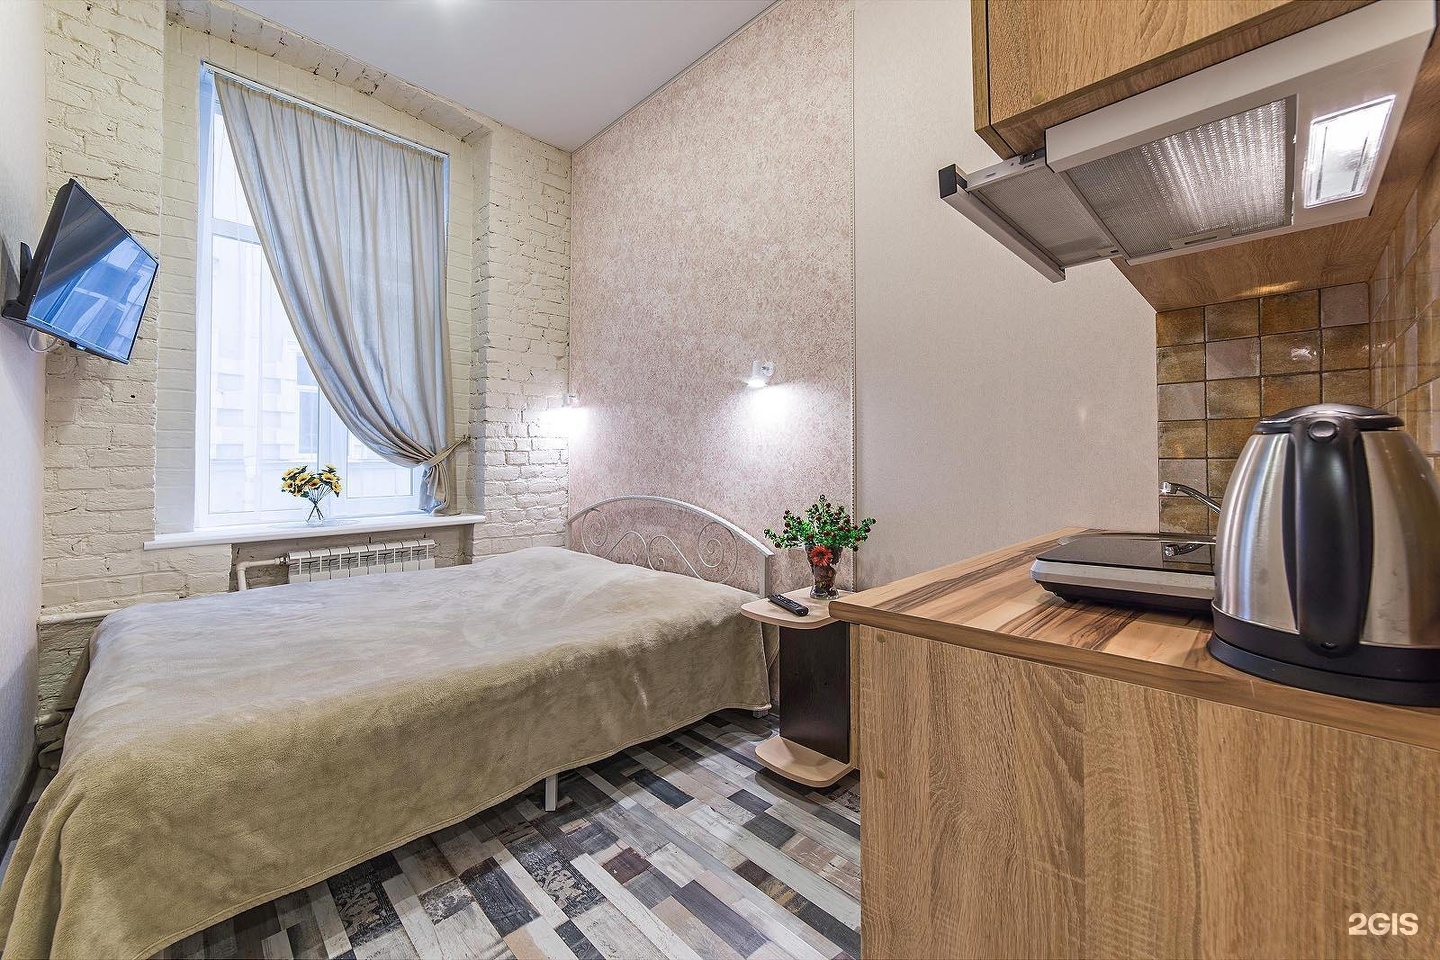 Снять комнату в санкт петербурге посуточно недорого без посредников от хозяина с фото